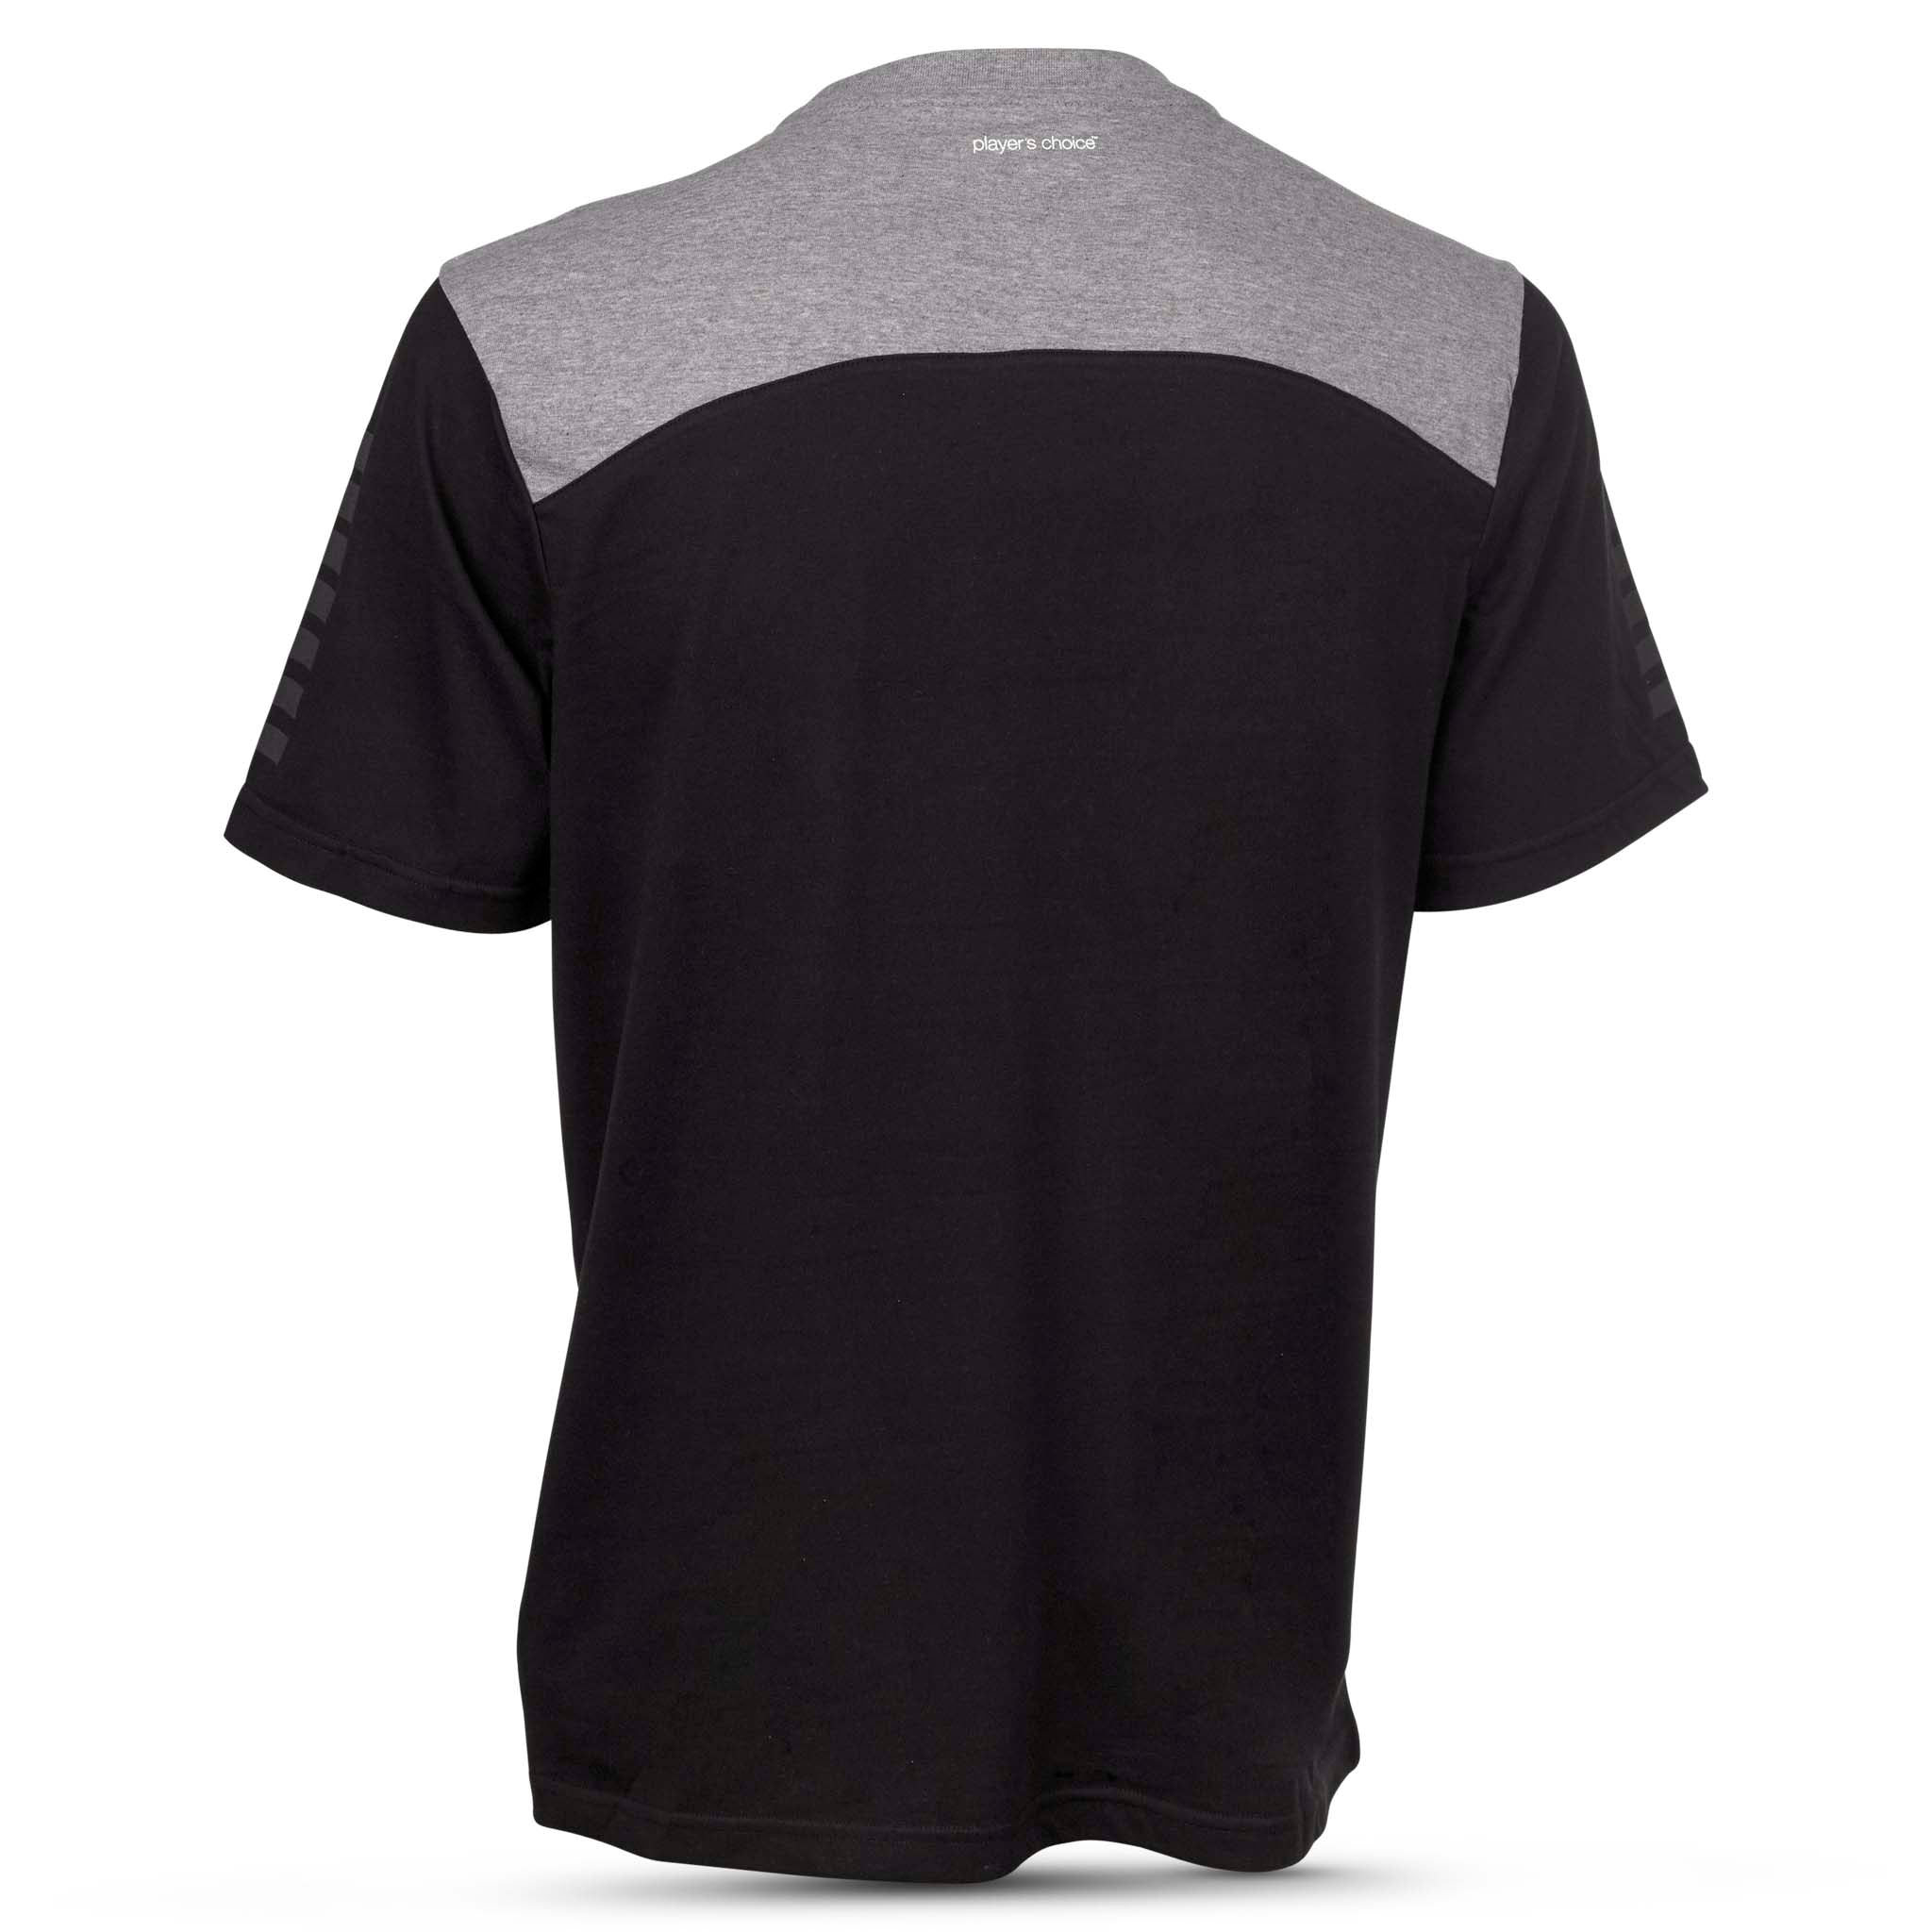 Oxford T-shirt #färg_ #färg_svart/grå #färg_svart/grå